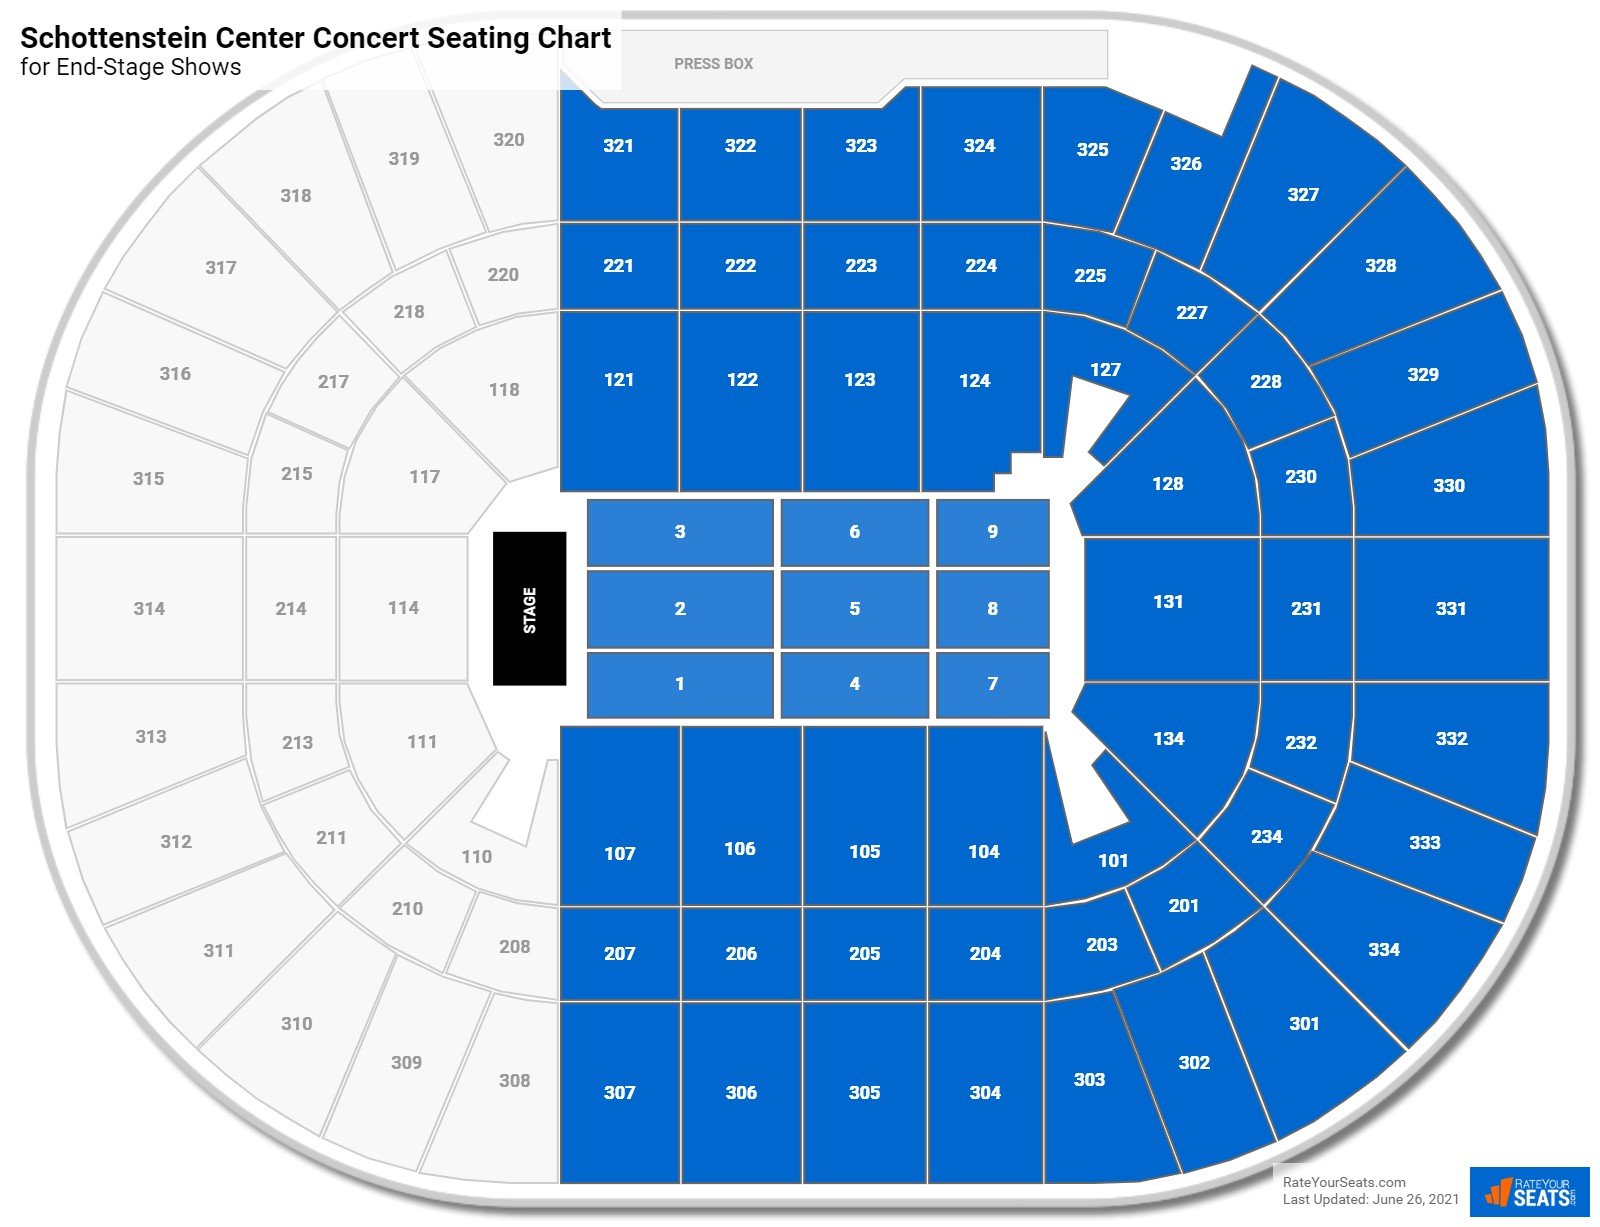 Schottenstein Center Concert Seating Chart